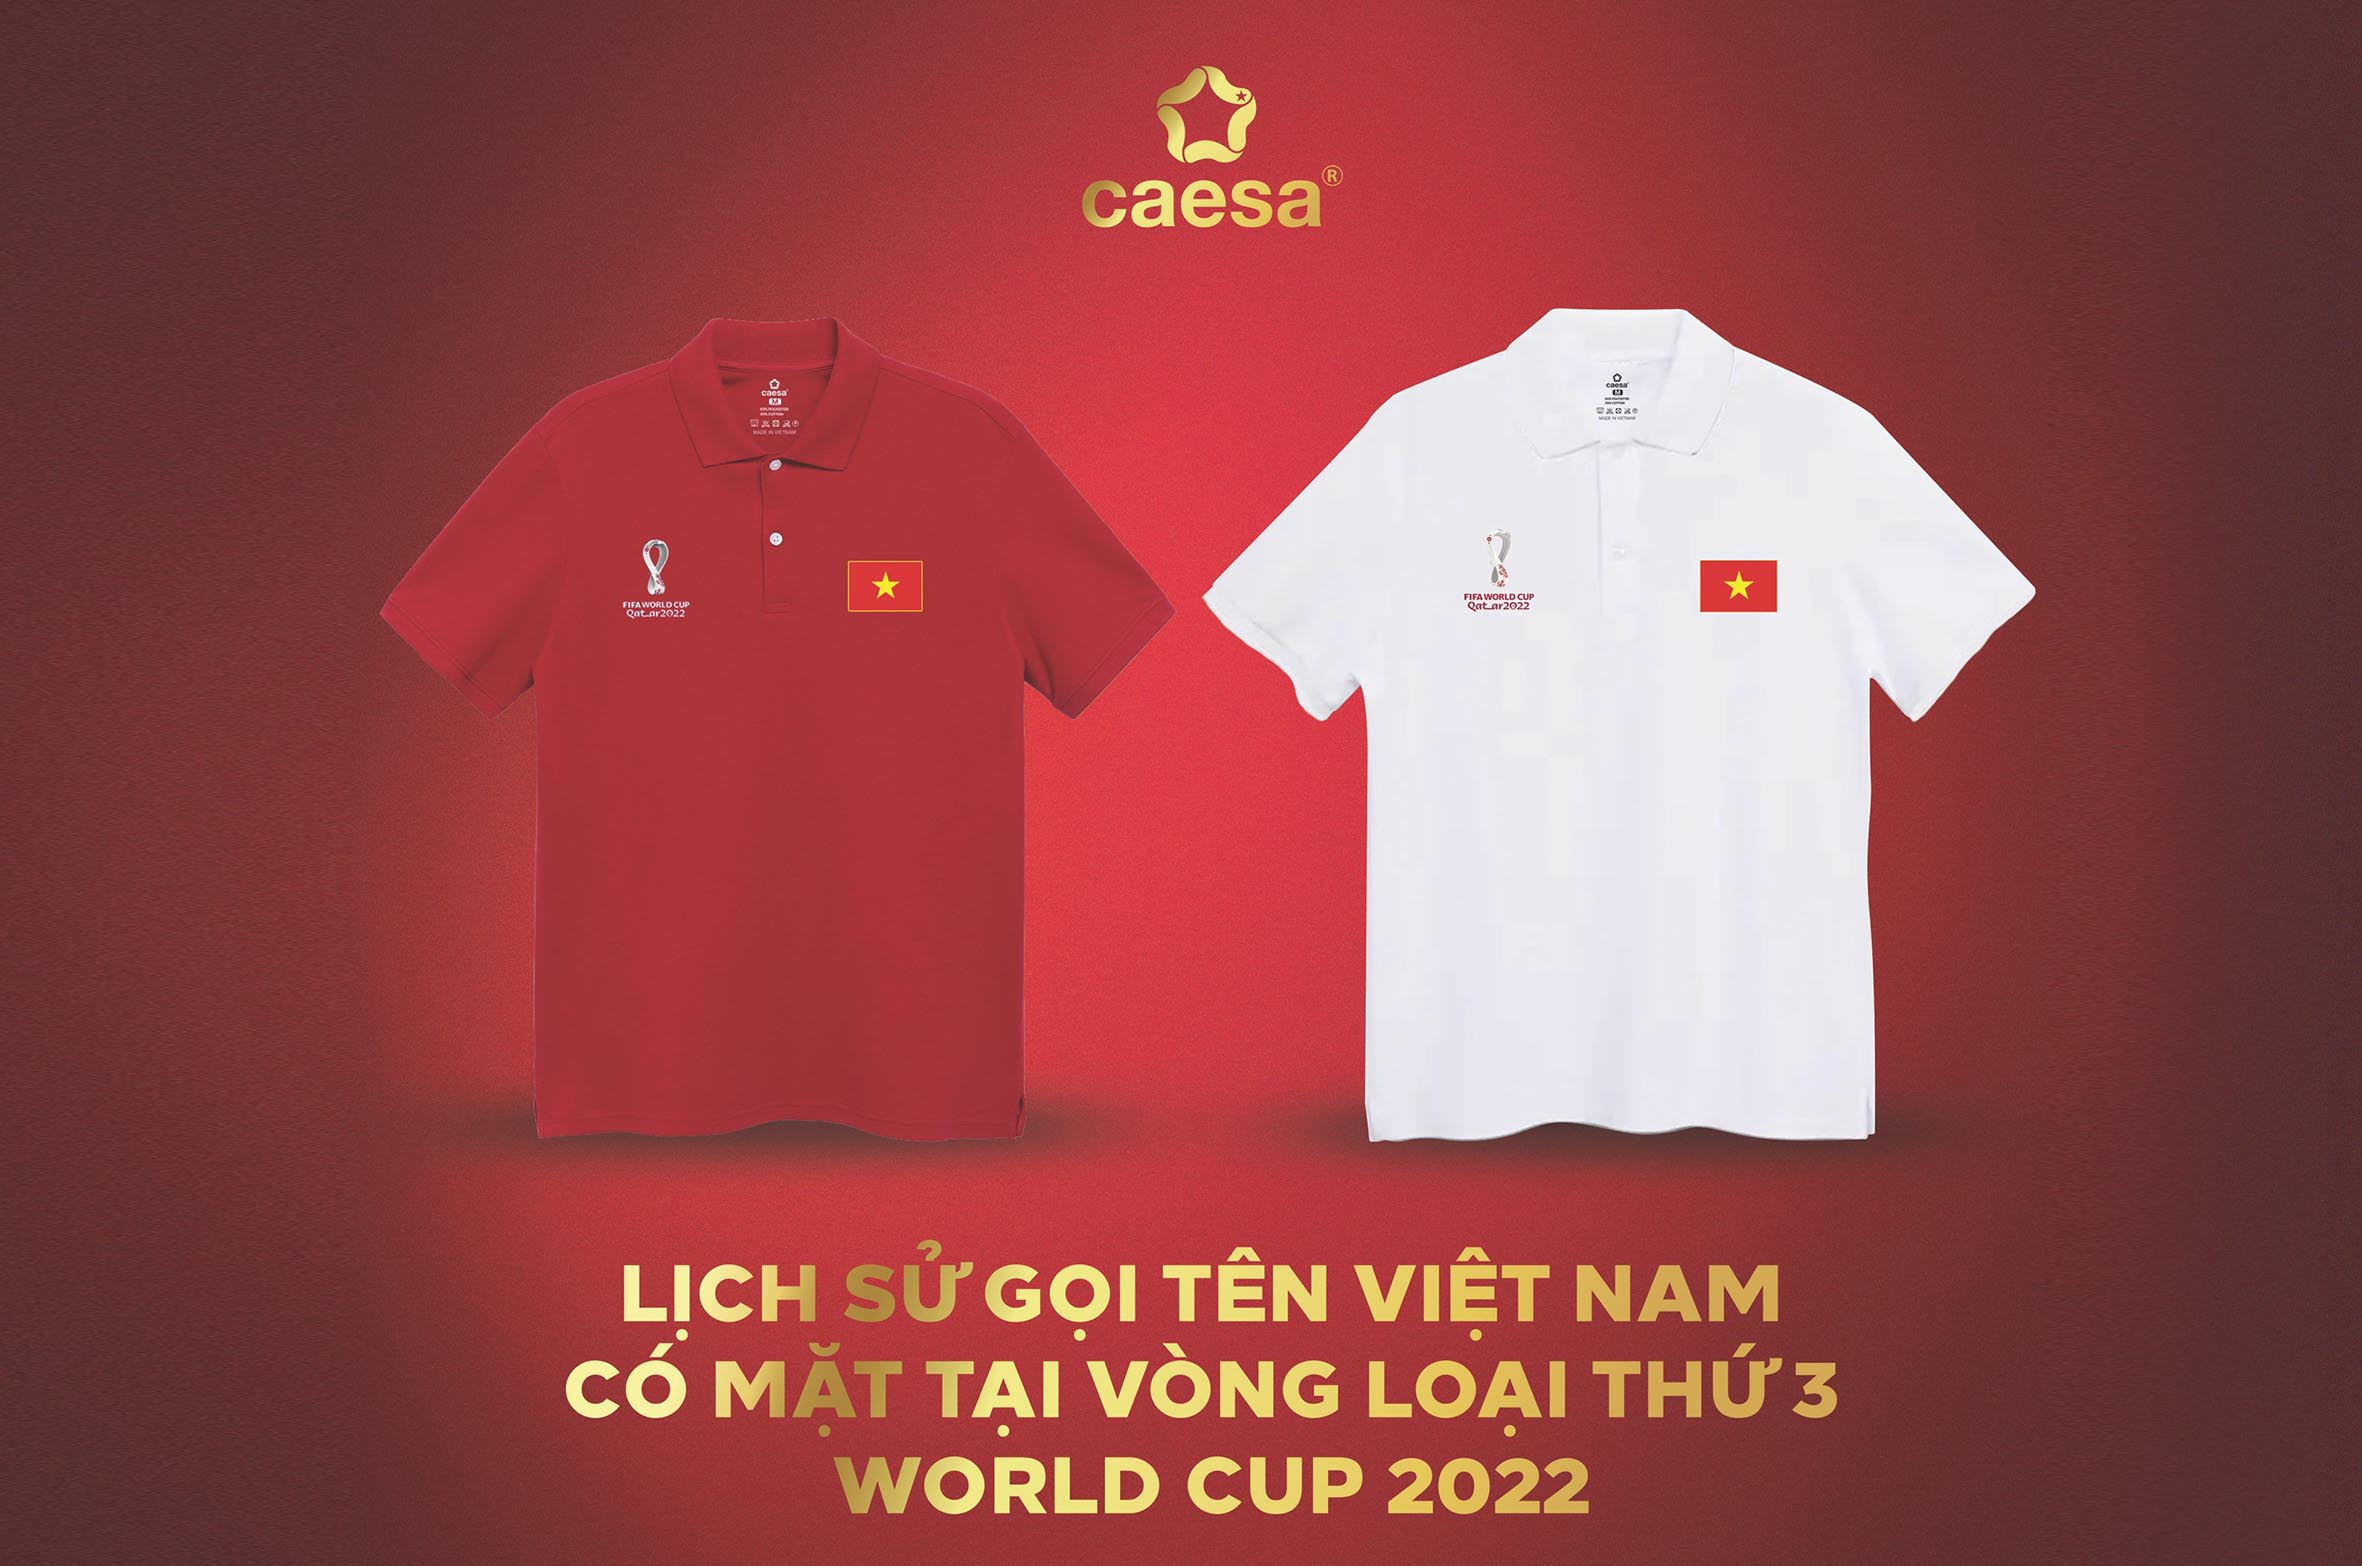 Caesa ra mắt mẫu áo Polo cổ động đội tuyển quốc gia Việt Nam